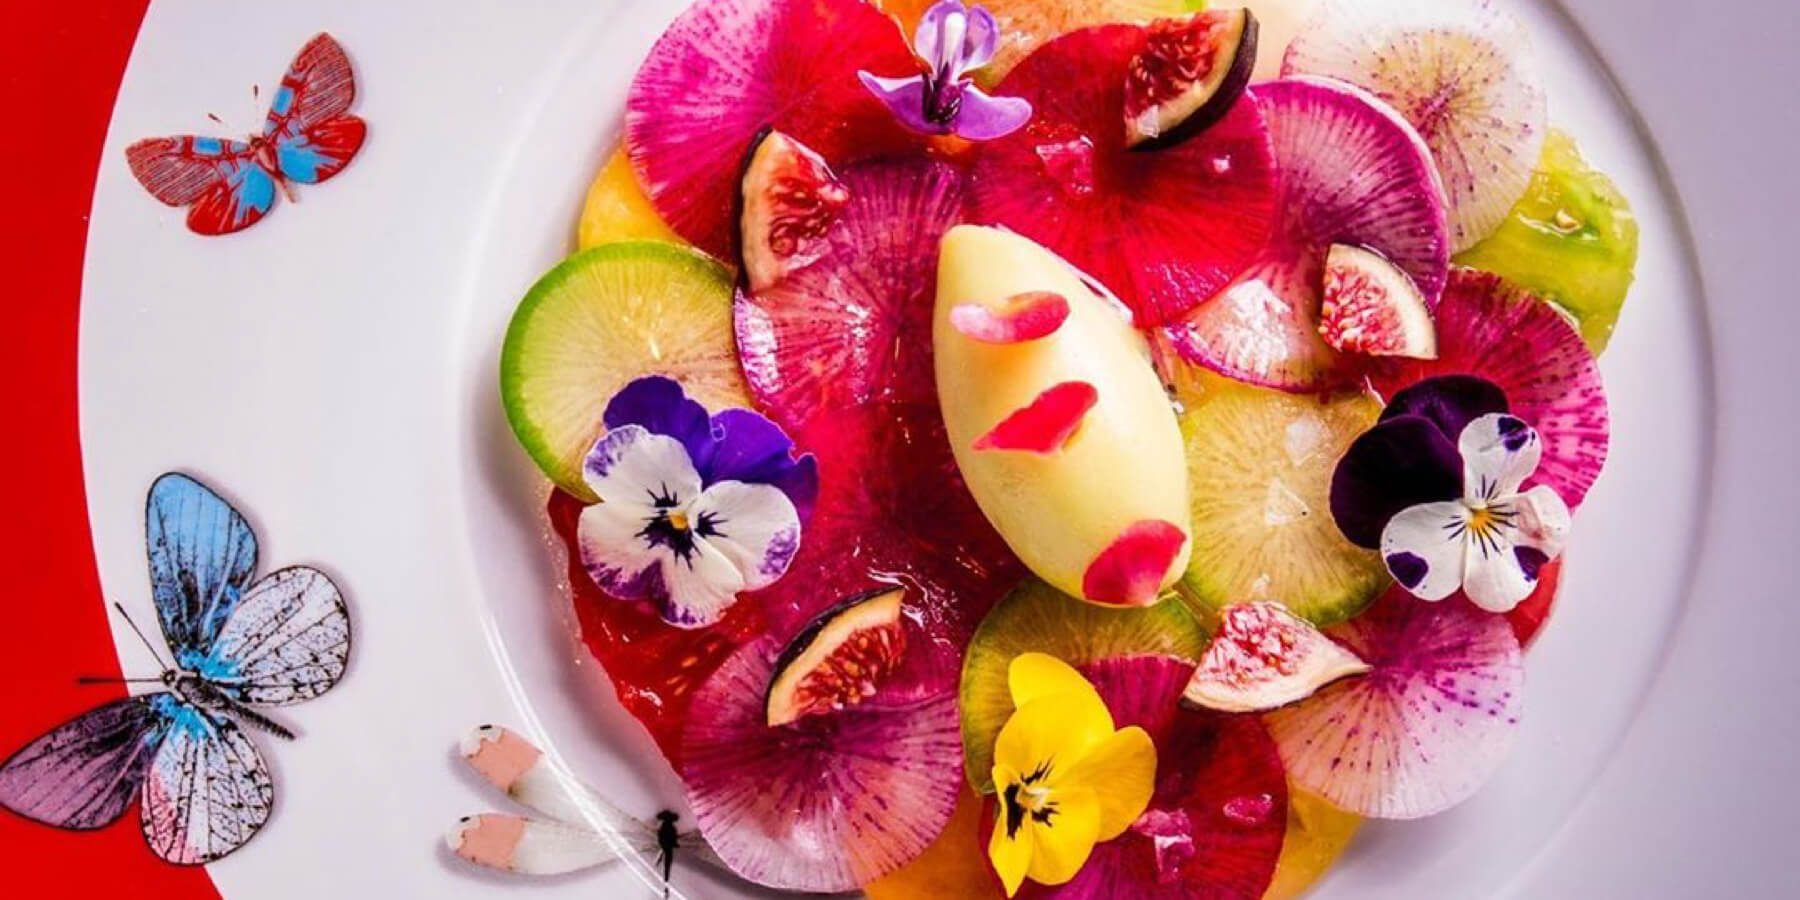 Vil du promovere din restaurant via Instagram? Bliv inspireret af disse seks best practices.